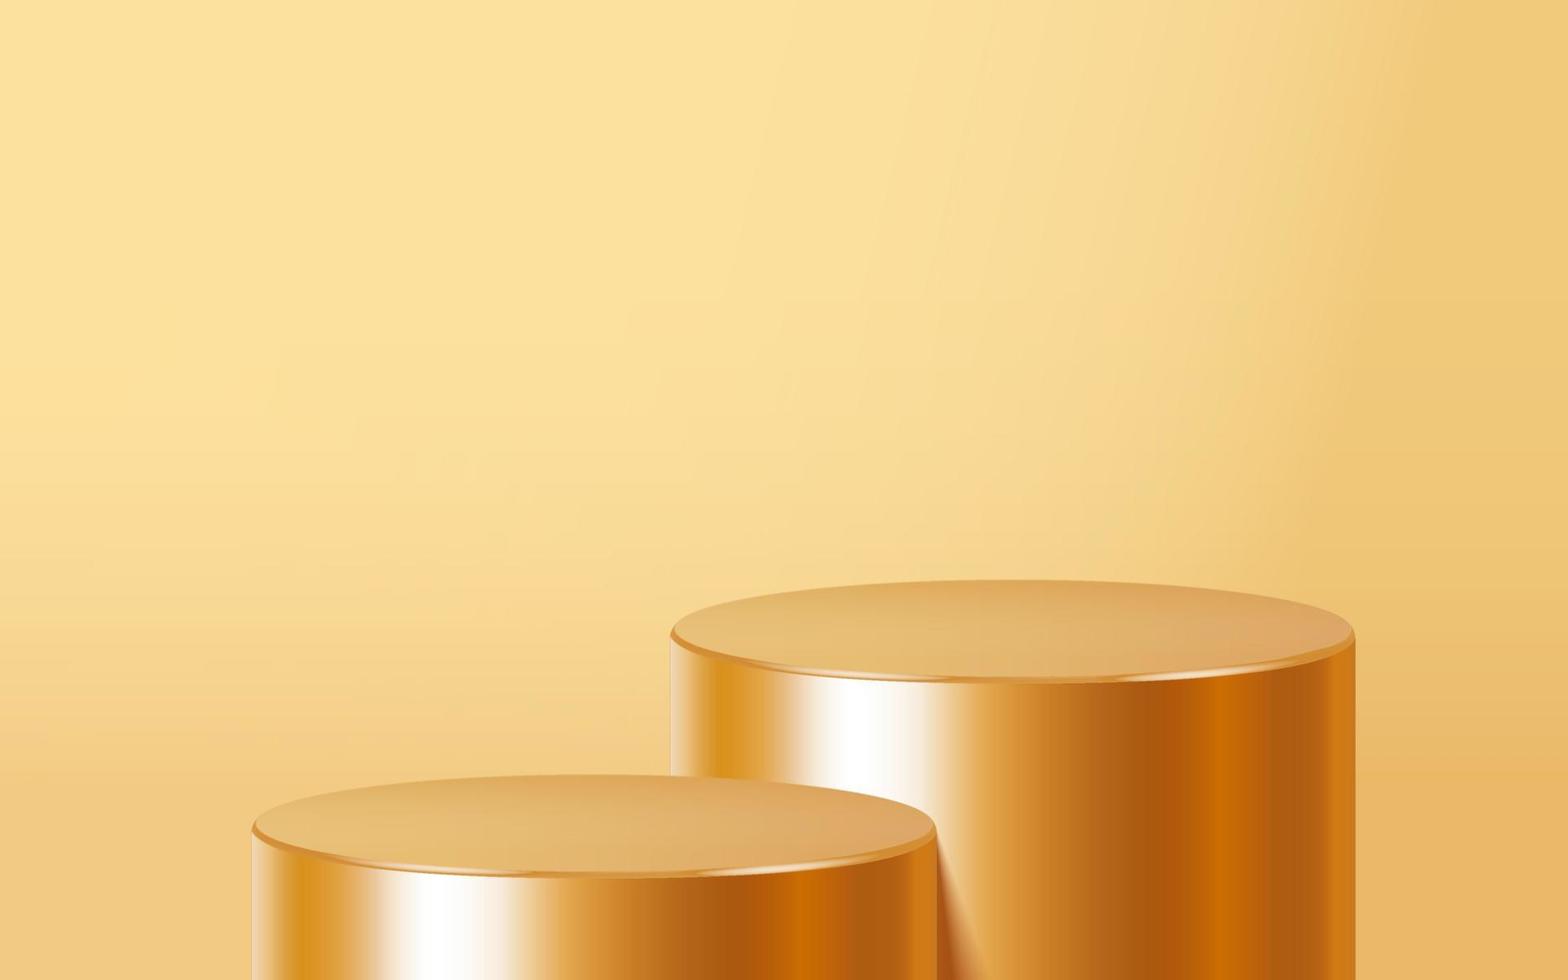 scena del podio realistica di due prodotti vuoti dorati isolata su fondo oro. forma rotonda metallica geometrica per il marchio del prodotto. scena di simulazione del cilindro d'oro. sfondo di illustrazione vettoriale 3d